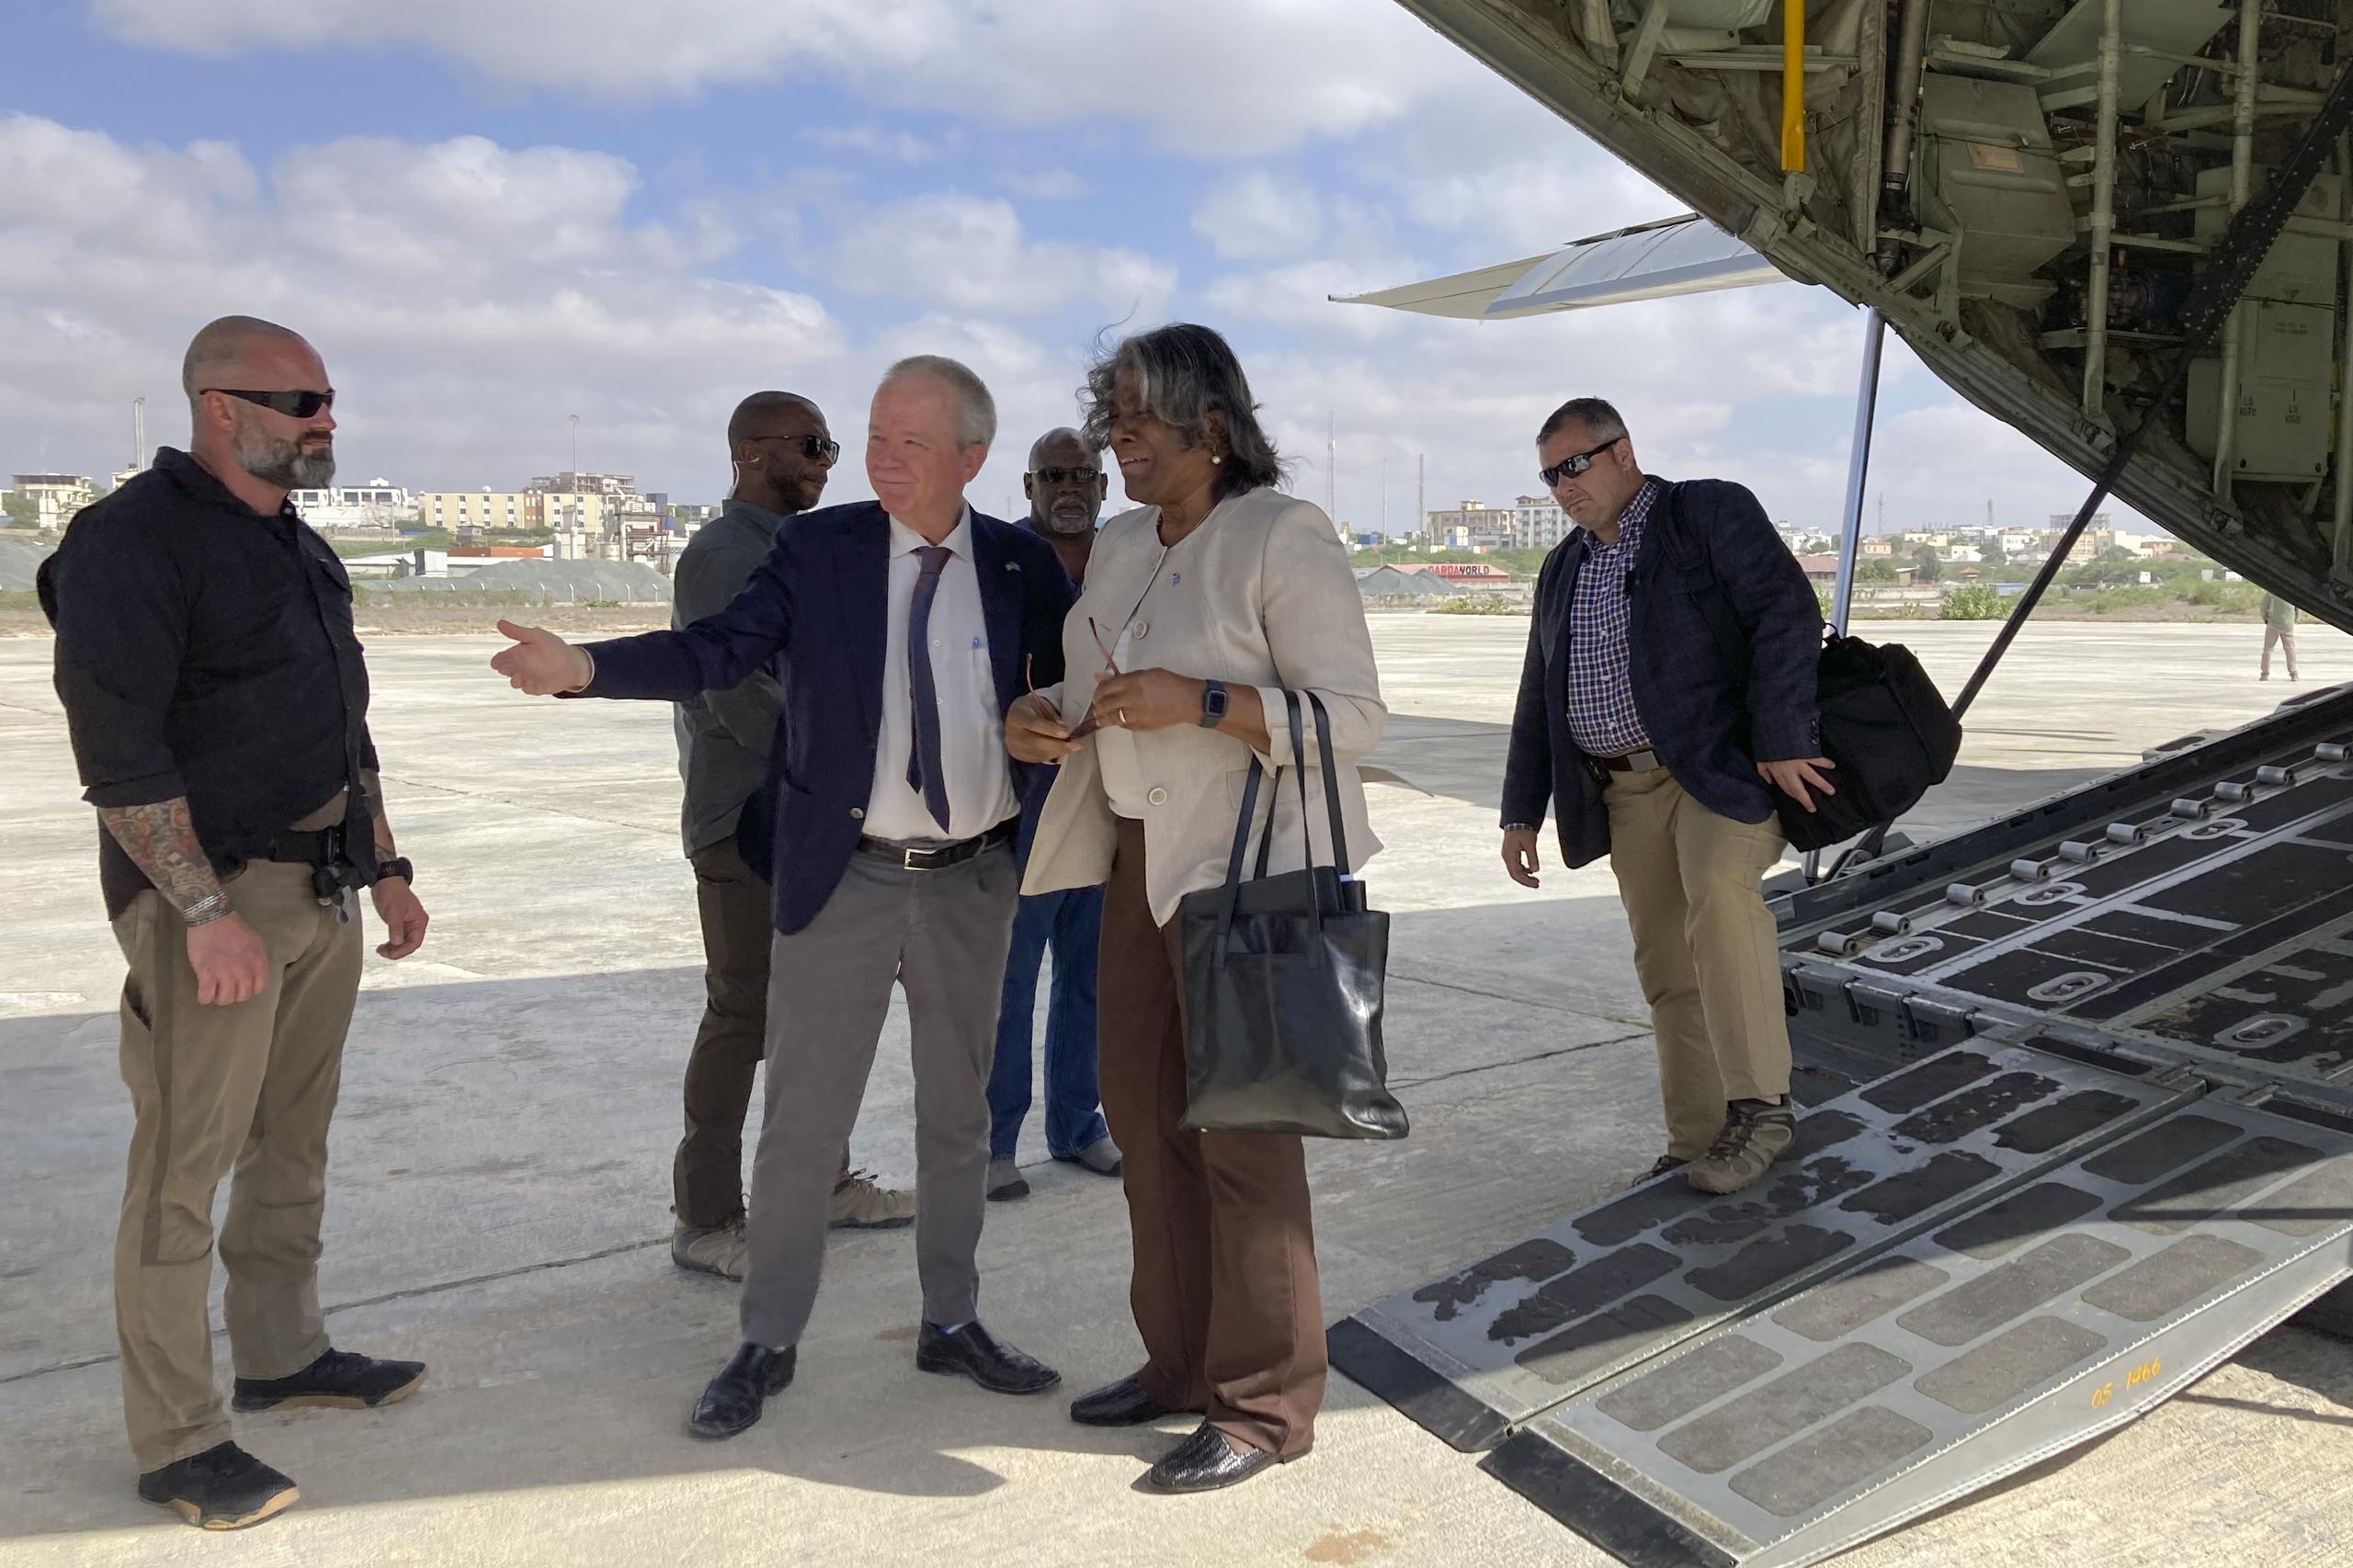 La embajadora de Estados Unidos ante las Naciones Unidas, Linda Thomas-Greenfield, en el centro, es recibida por el embajador de Estados Unidos en Somalia, Larry Andre, en el centro a la izquierda, a su llegada a Mogadiscio, Somalia, el domingo 29 de enero de 2023. (Foto AP/Cara Anna)